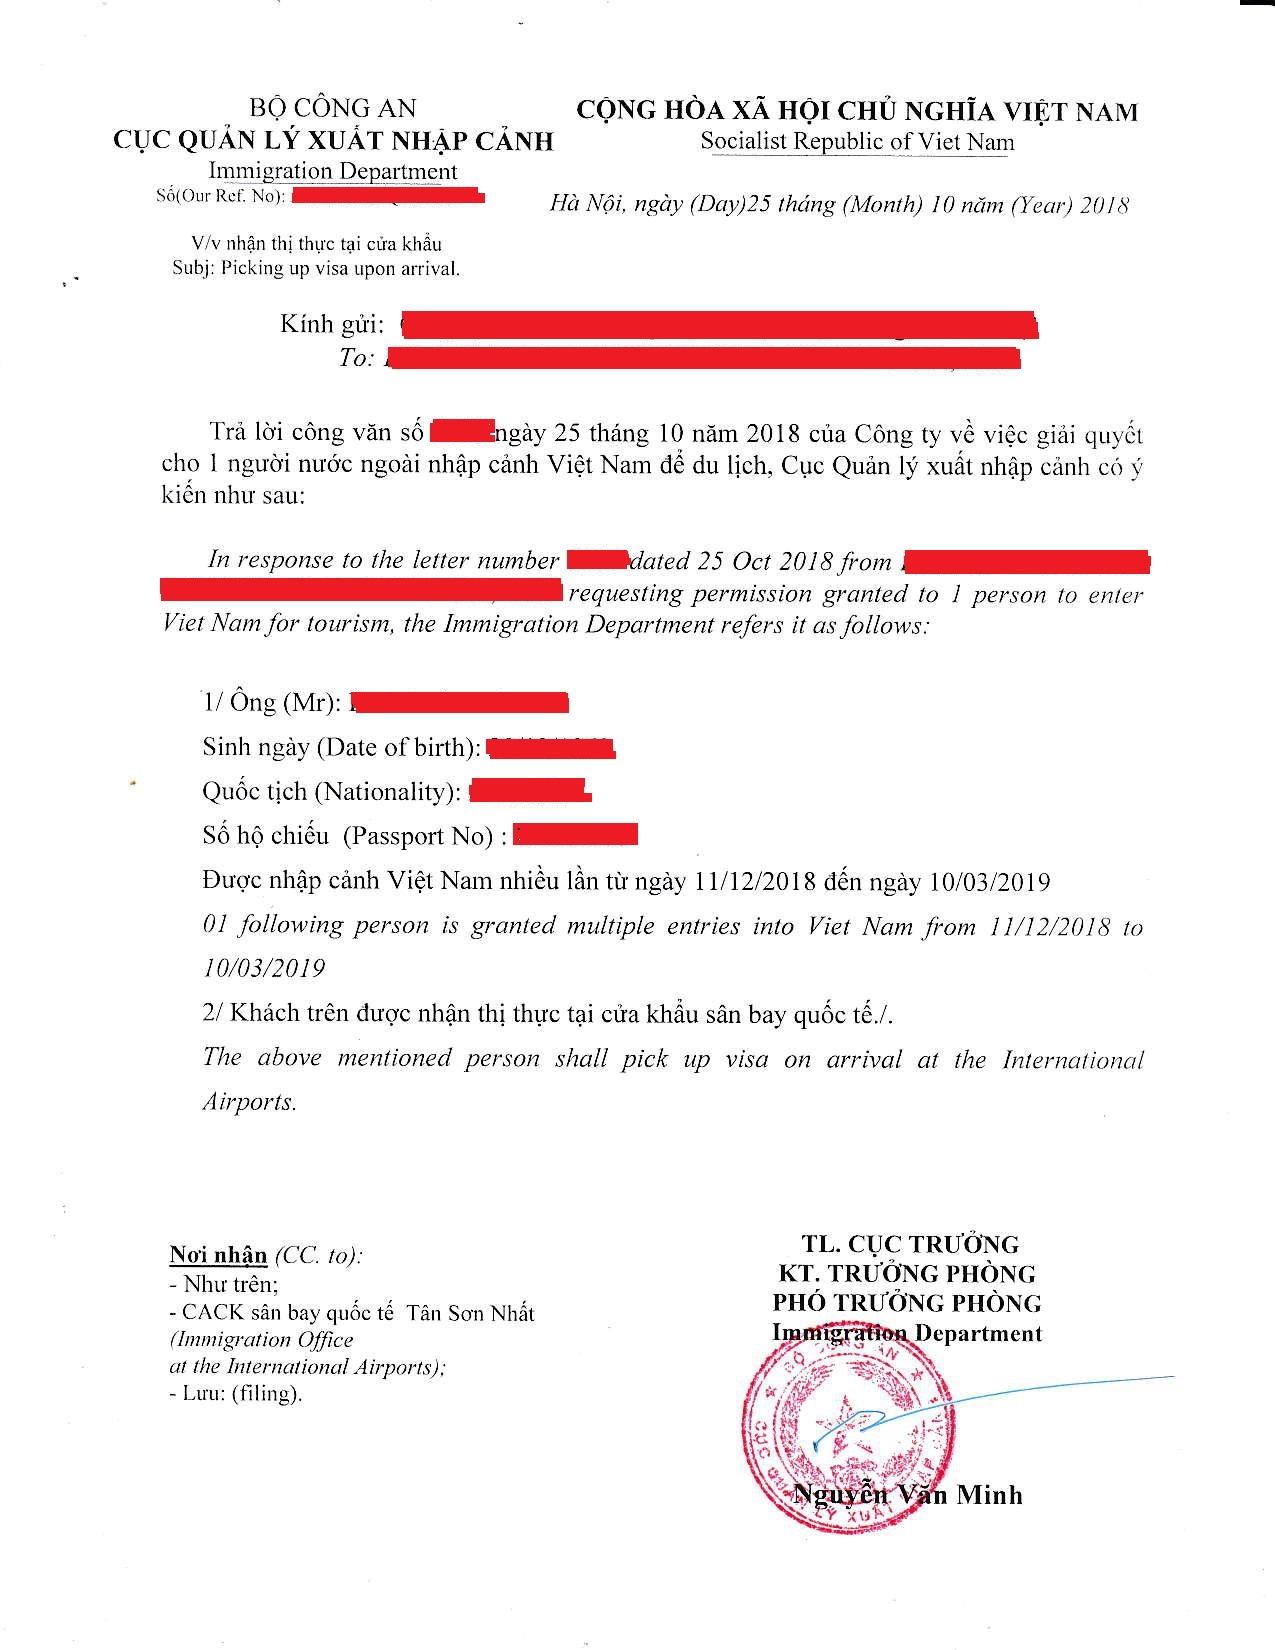 Vietnam visa on arrival with Visa Approval Letter